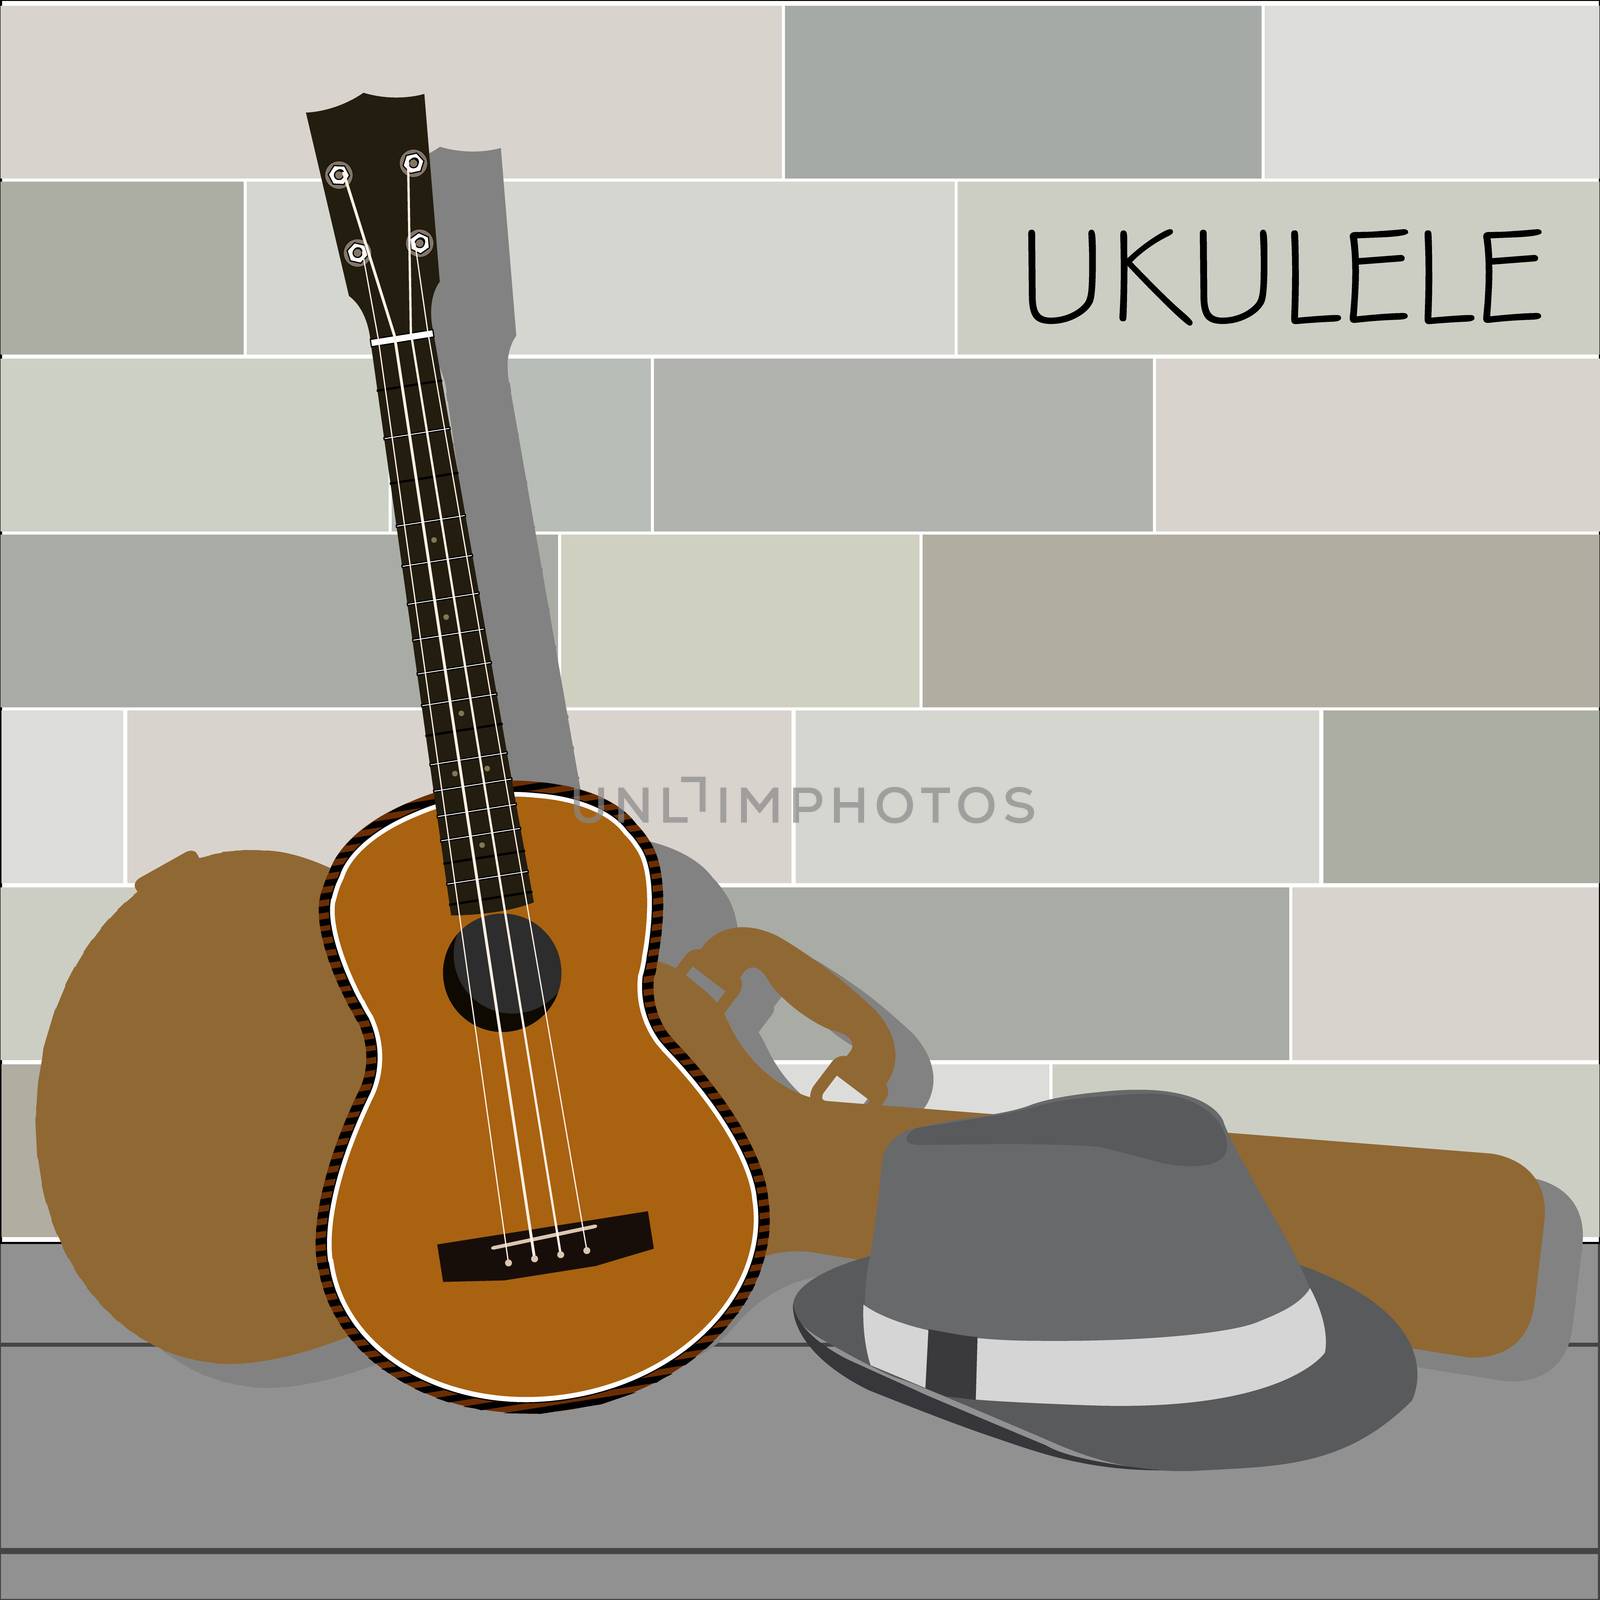 Ukulele and Panama Hat by landscafe